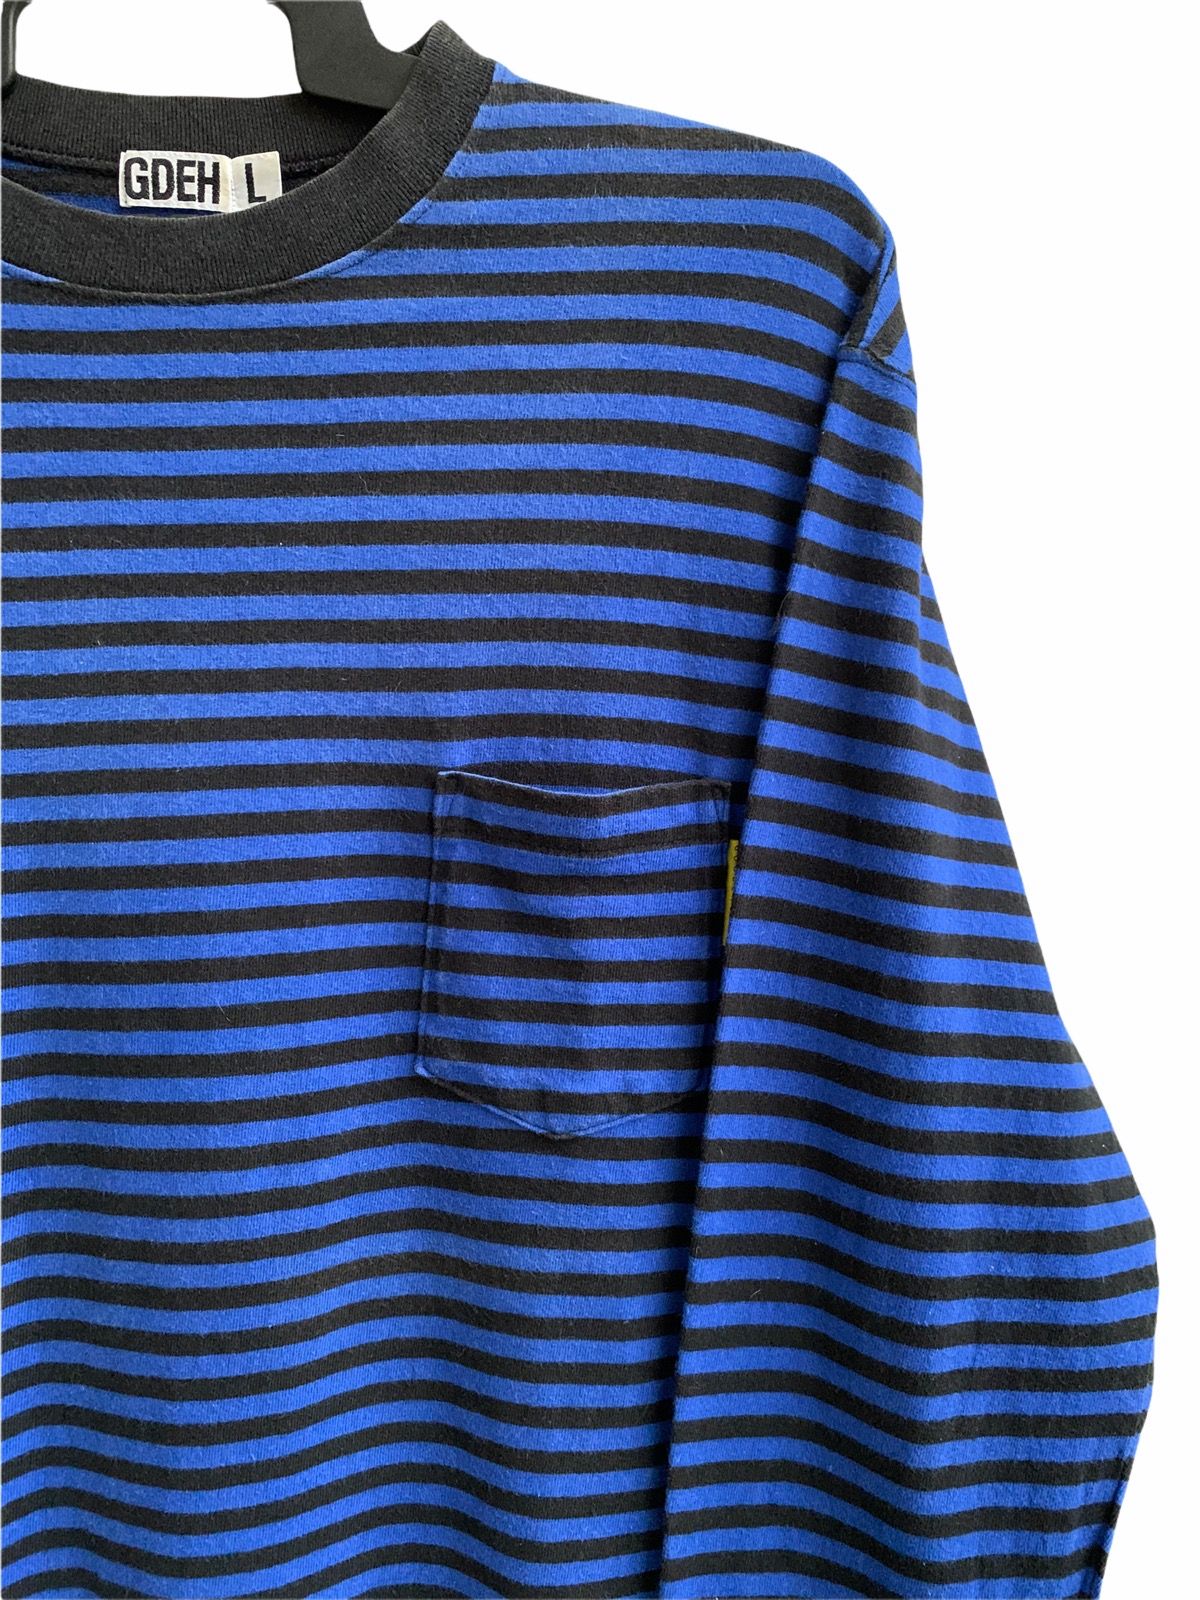 Goodenough Vinateg Good Enough Blue Striped Long Sleeve T-shirts Size US L / EU 52-54 / 3 - 3 Thumbnail